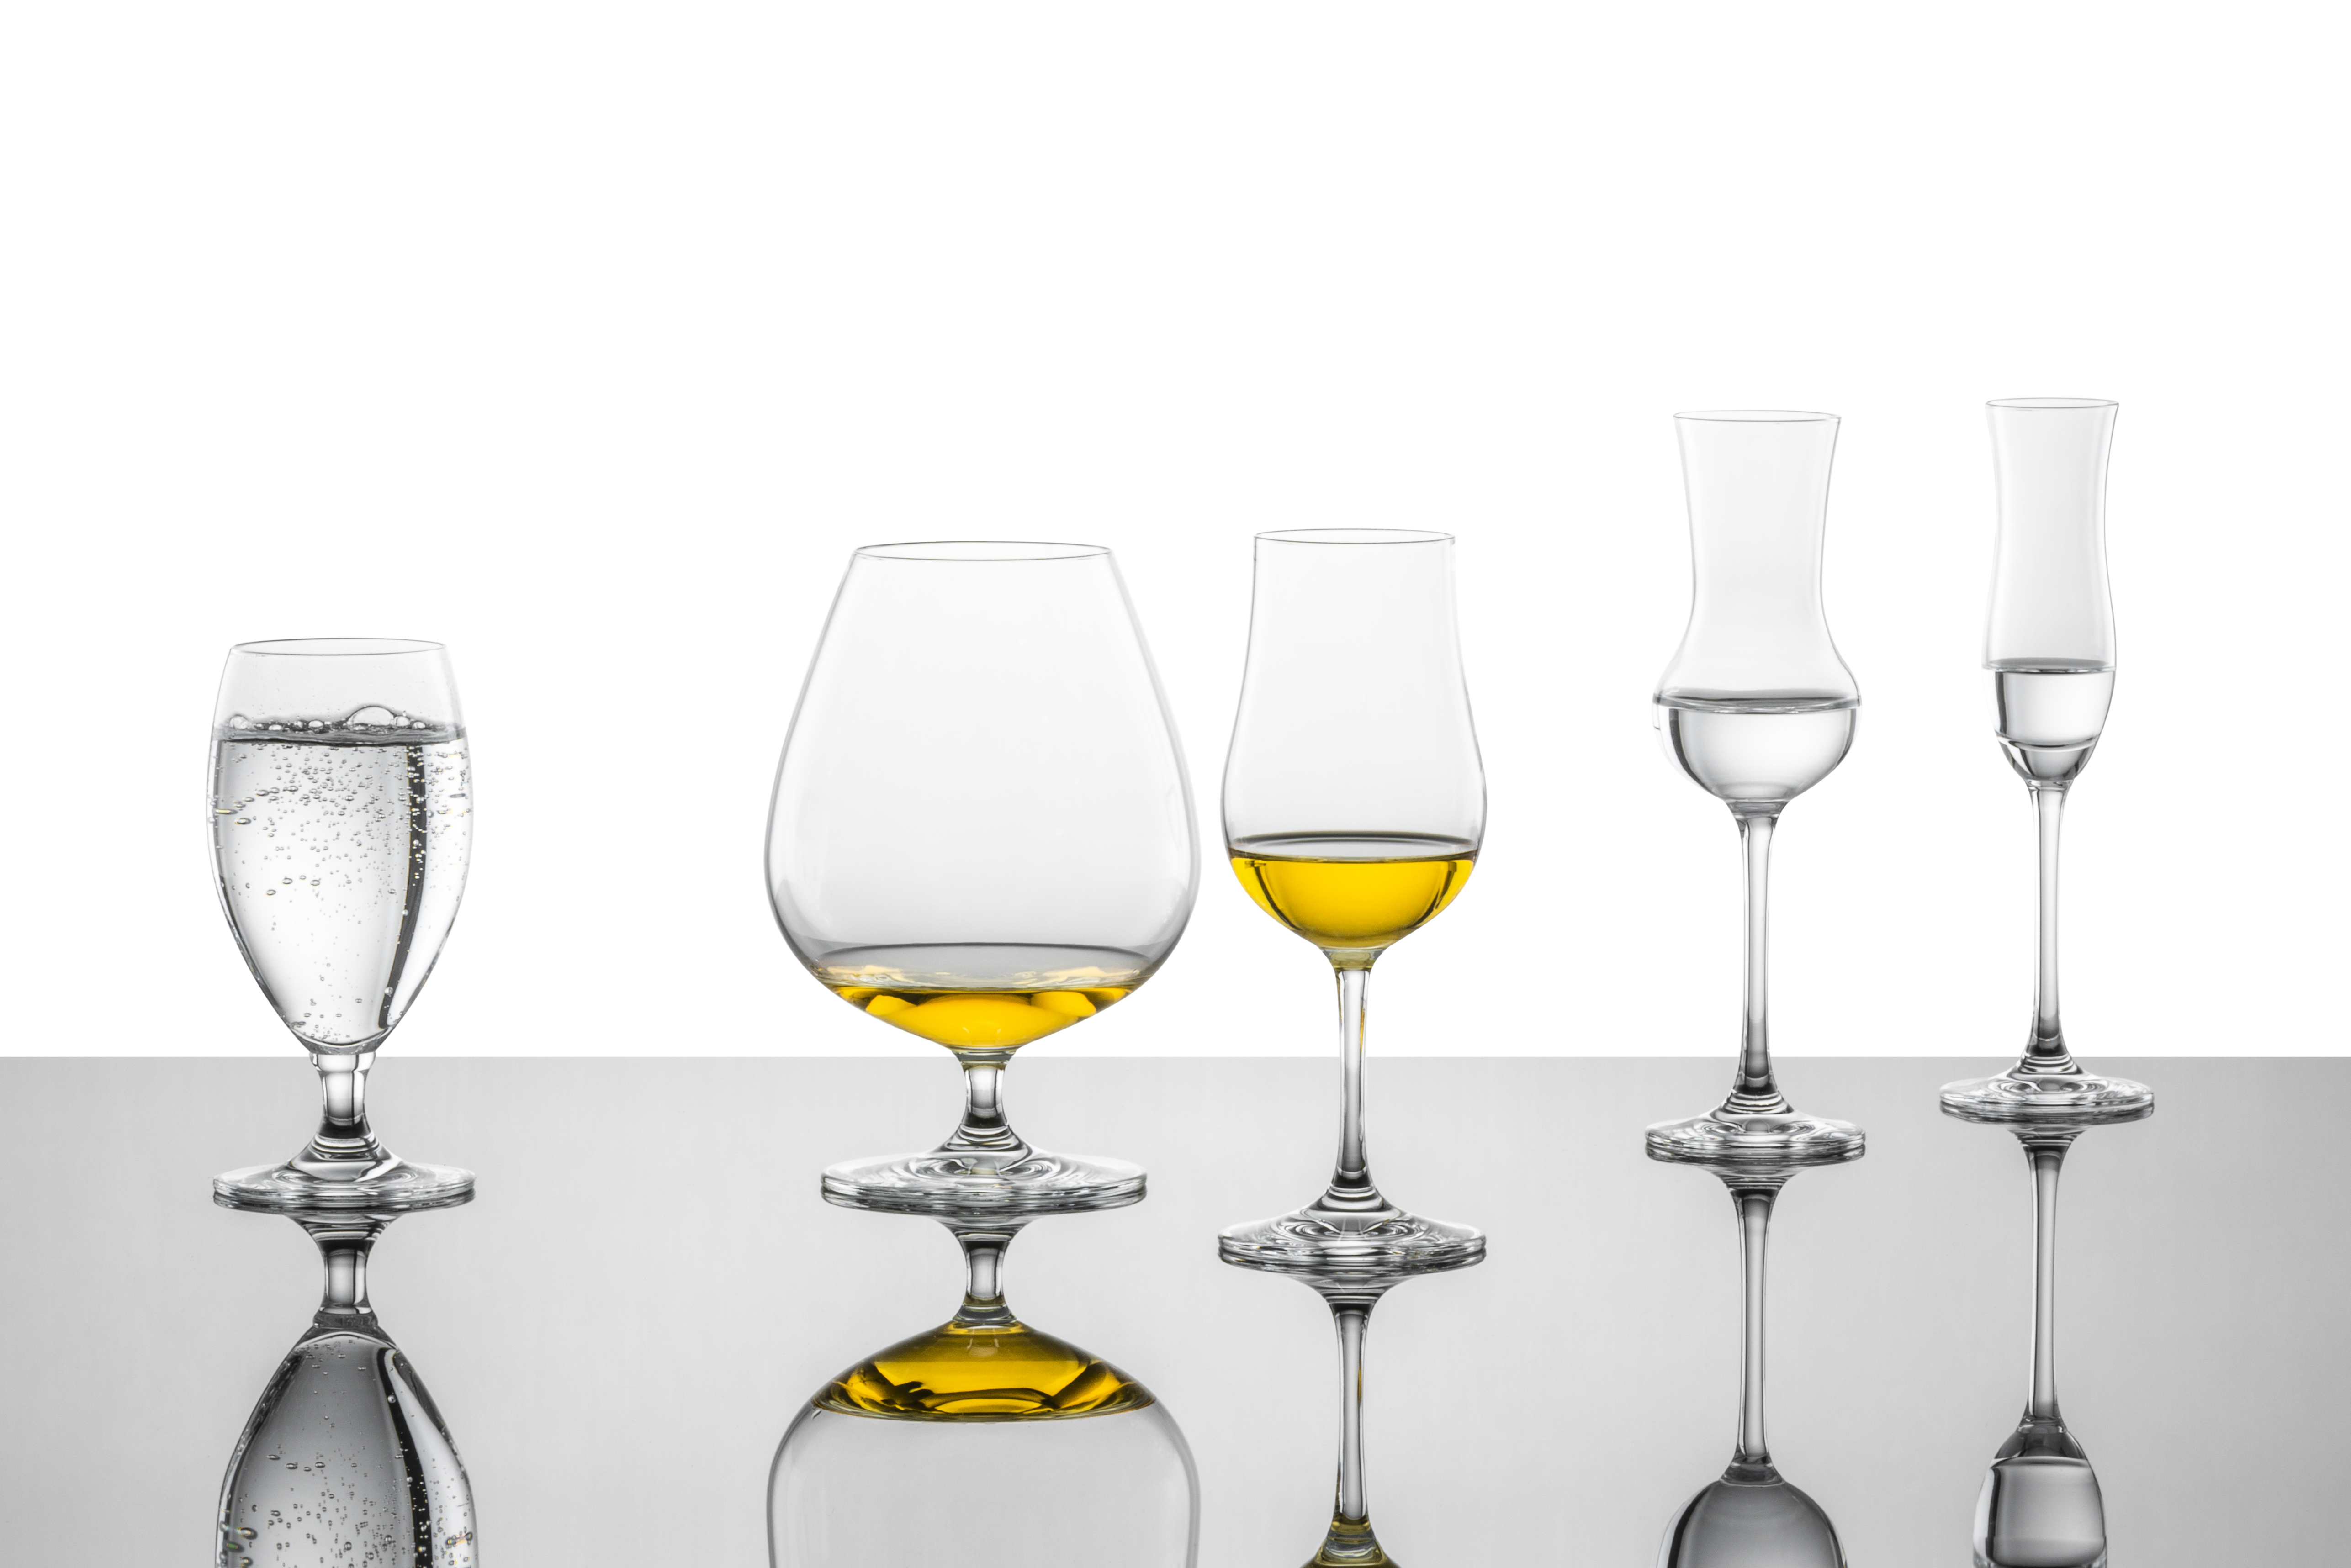 Wetenschap lava Discriminerend Schott Zwiesel Cognac glass XXL Bar Special | ZWIESEL GLAS